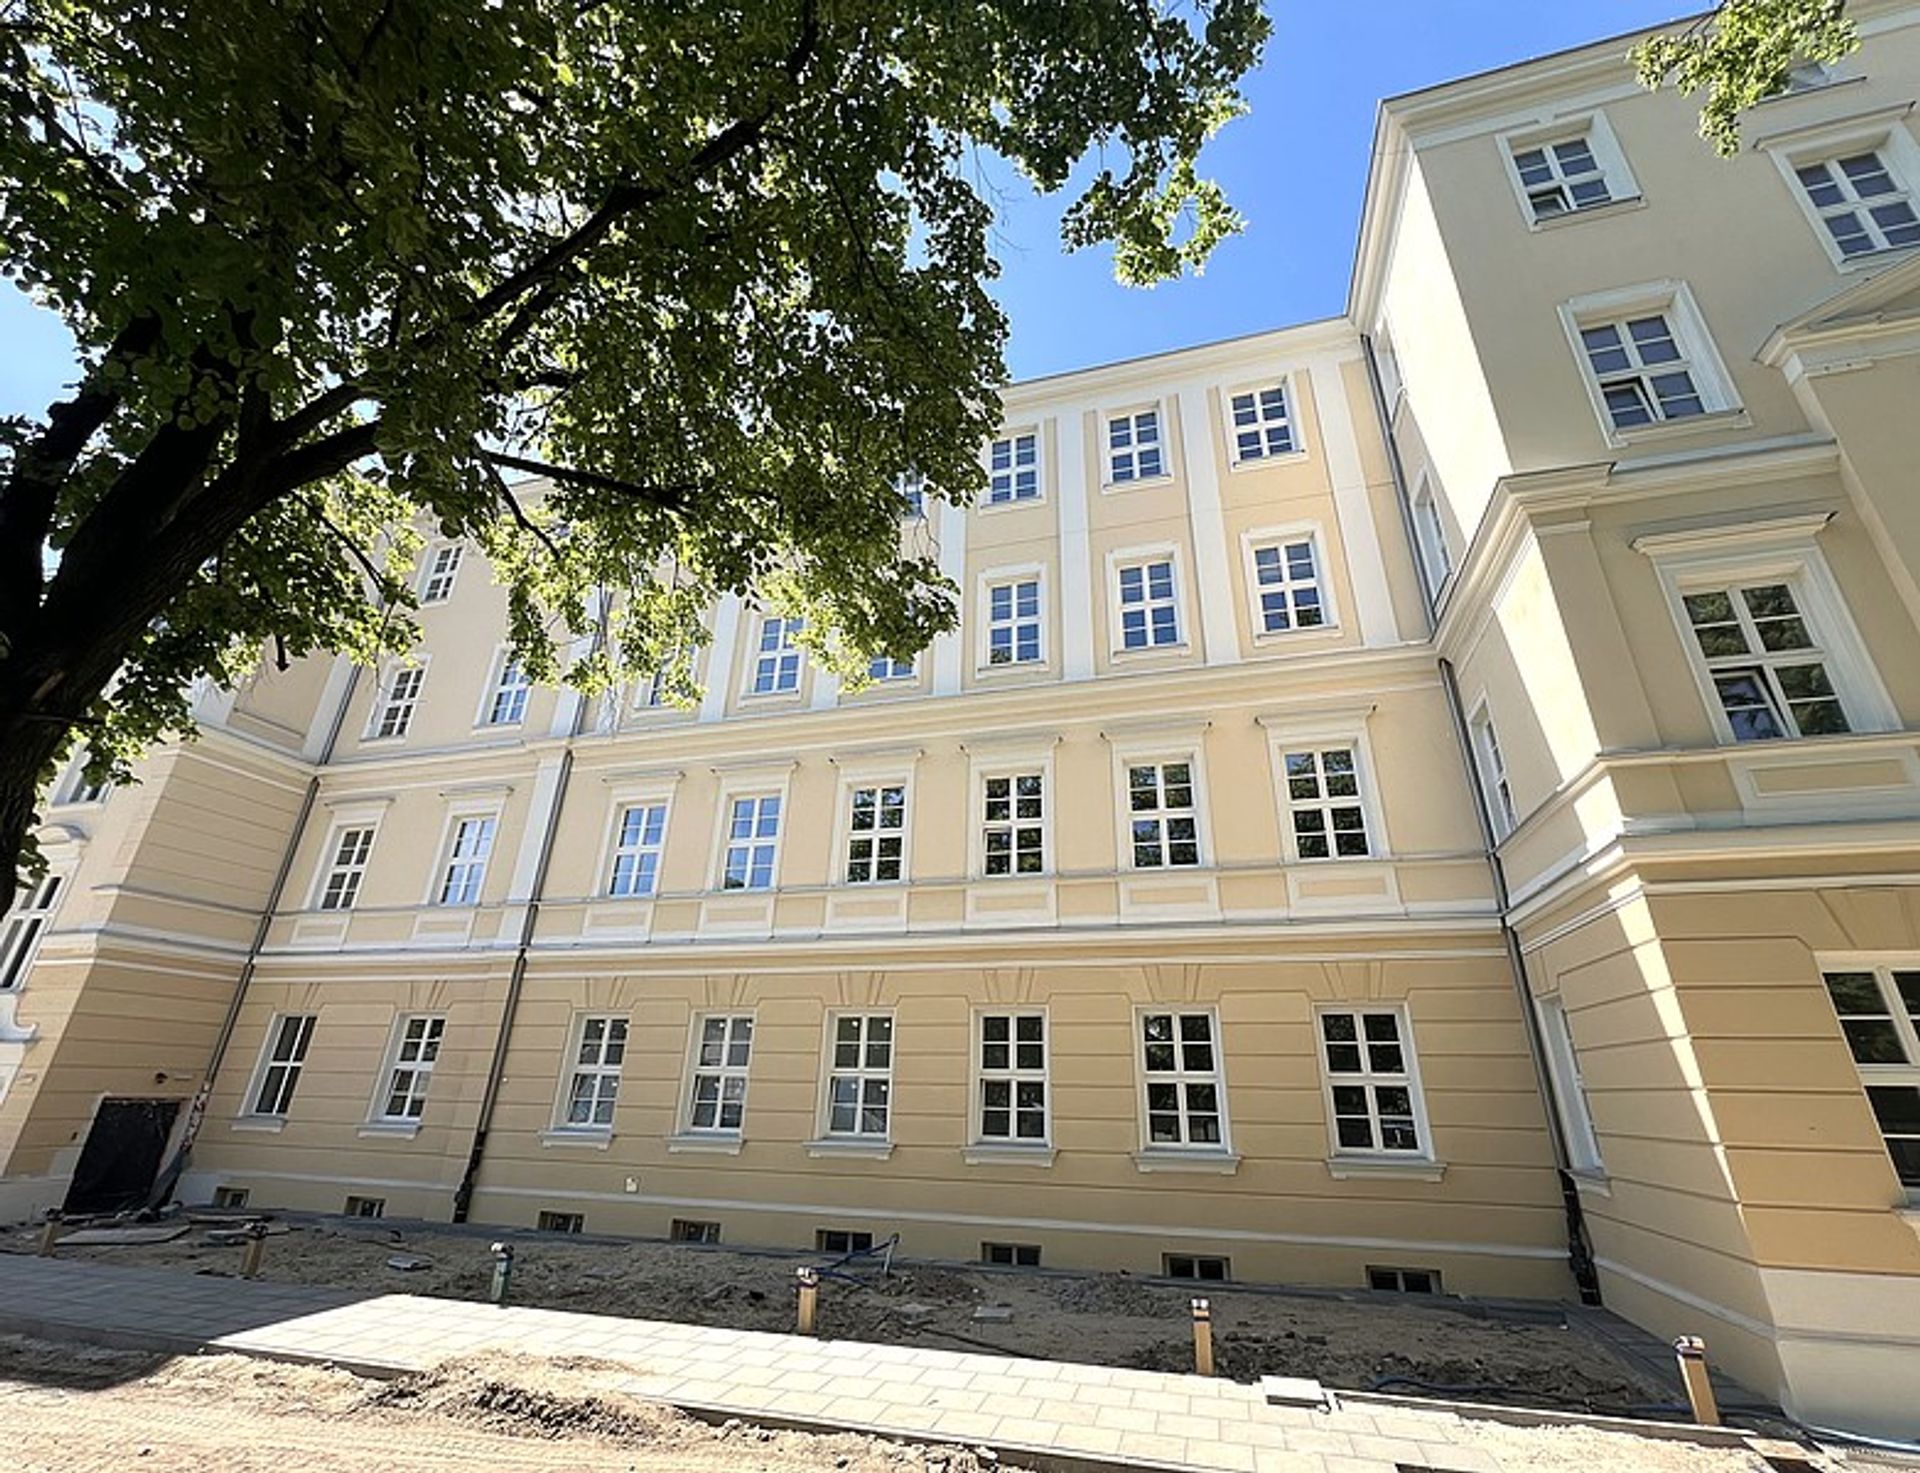 Remont budynku "B" Szpitala Praskiego w Warszawie zmierza ku końcowi